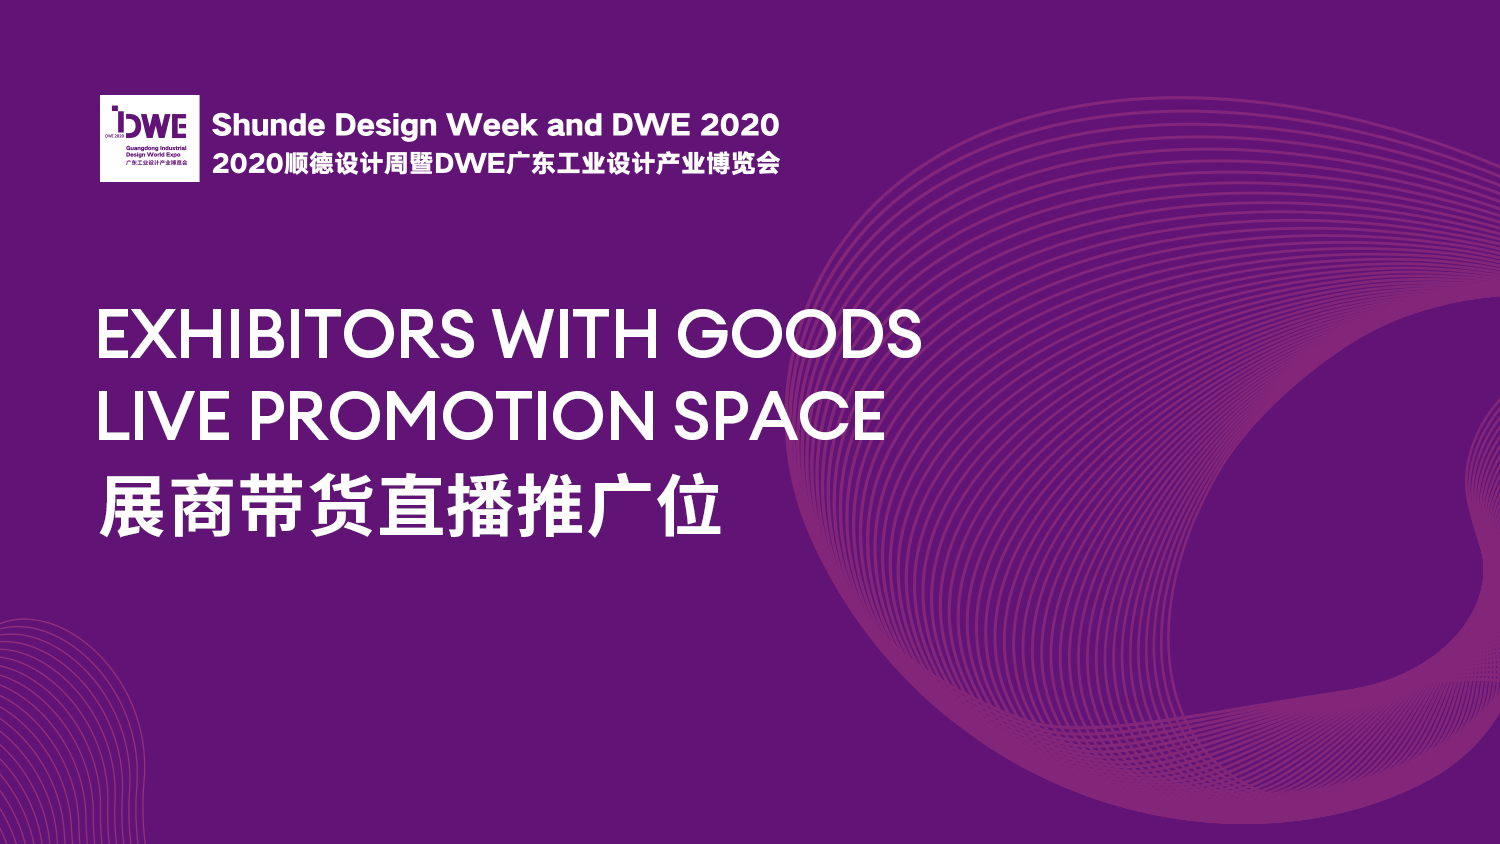 2020顺德设计周暨DWE广东工业设计产业博览会之美啊逛展